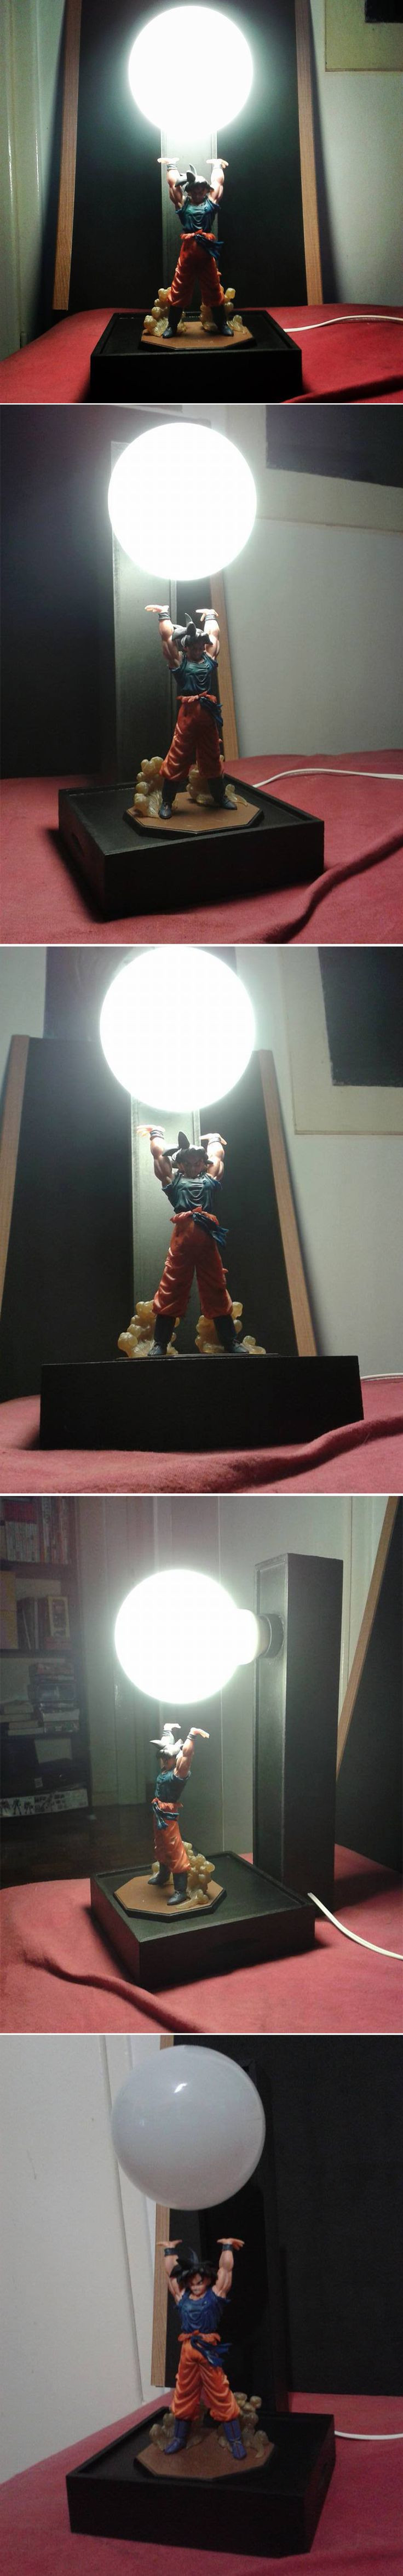 Incredible Dragon Ball Z Goku Lamp